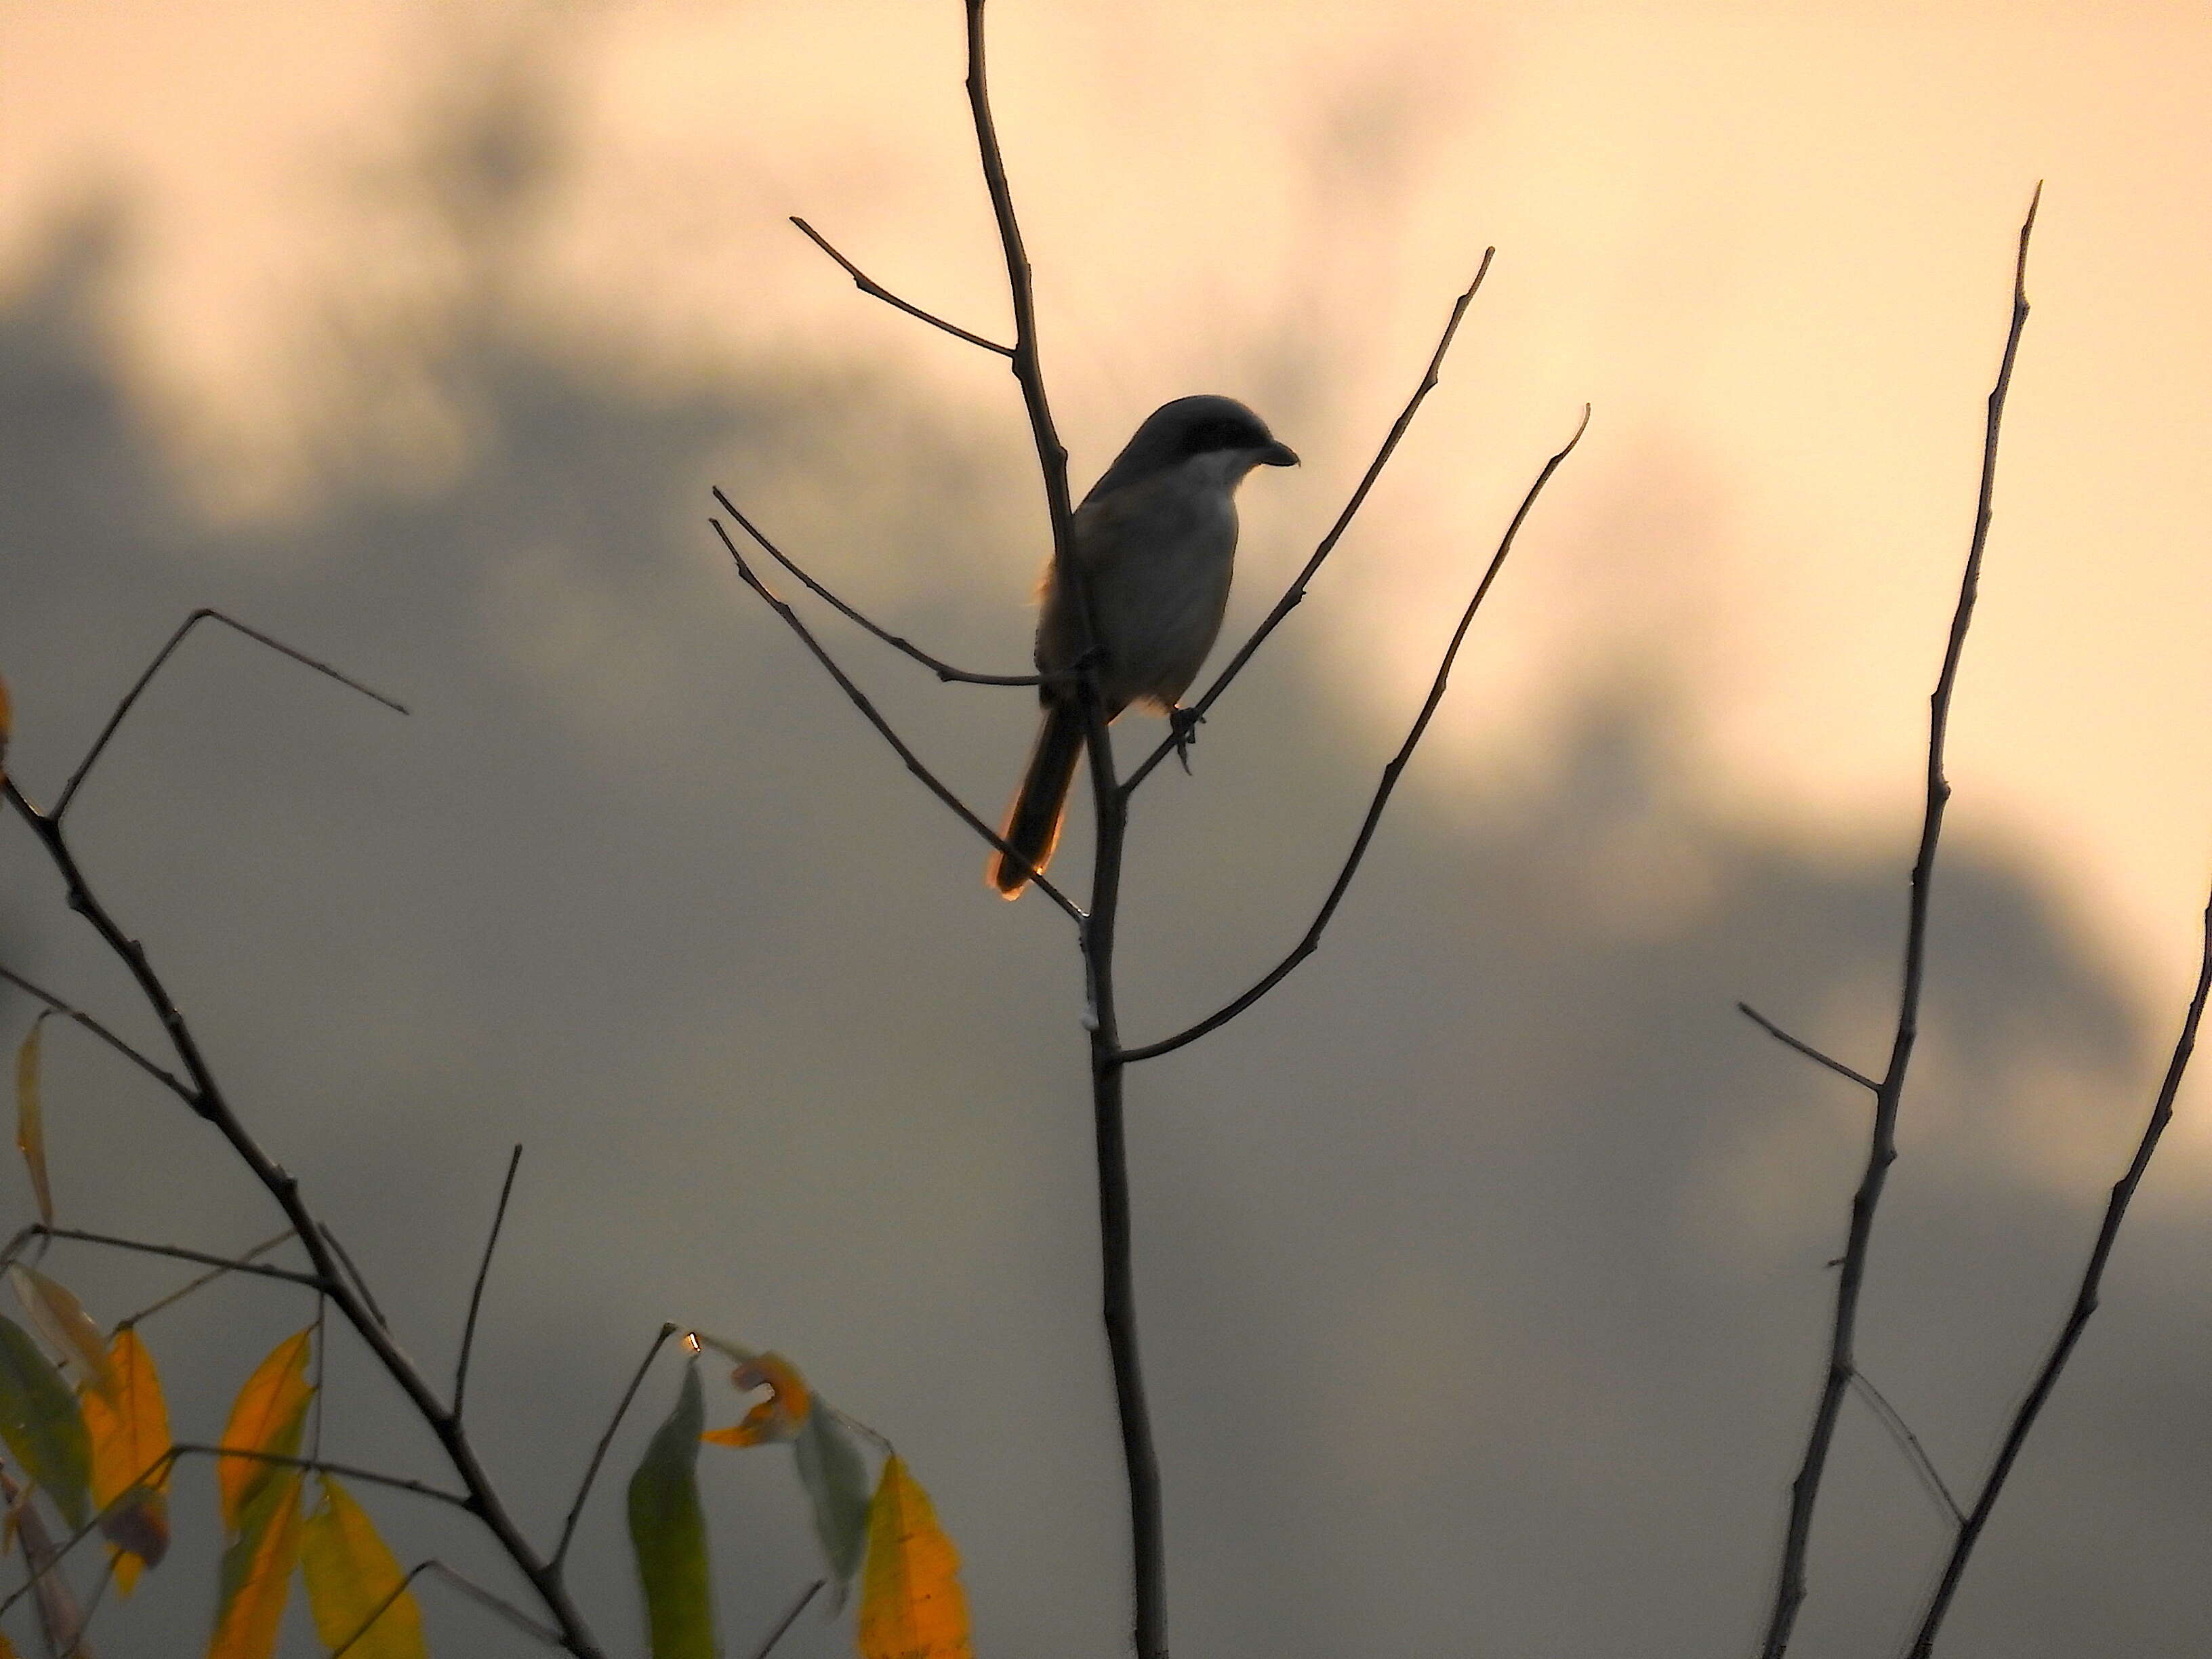 Image of Grey-backed Shrike